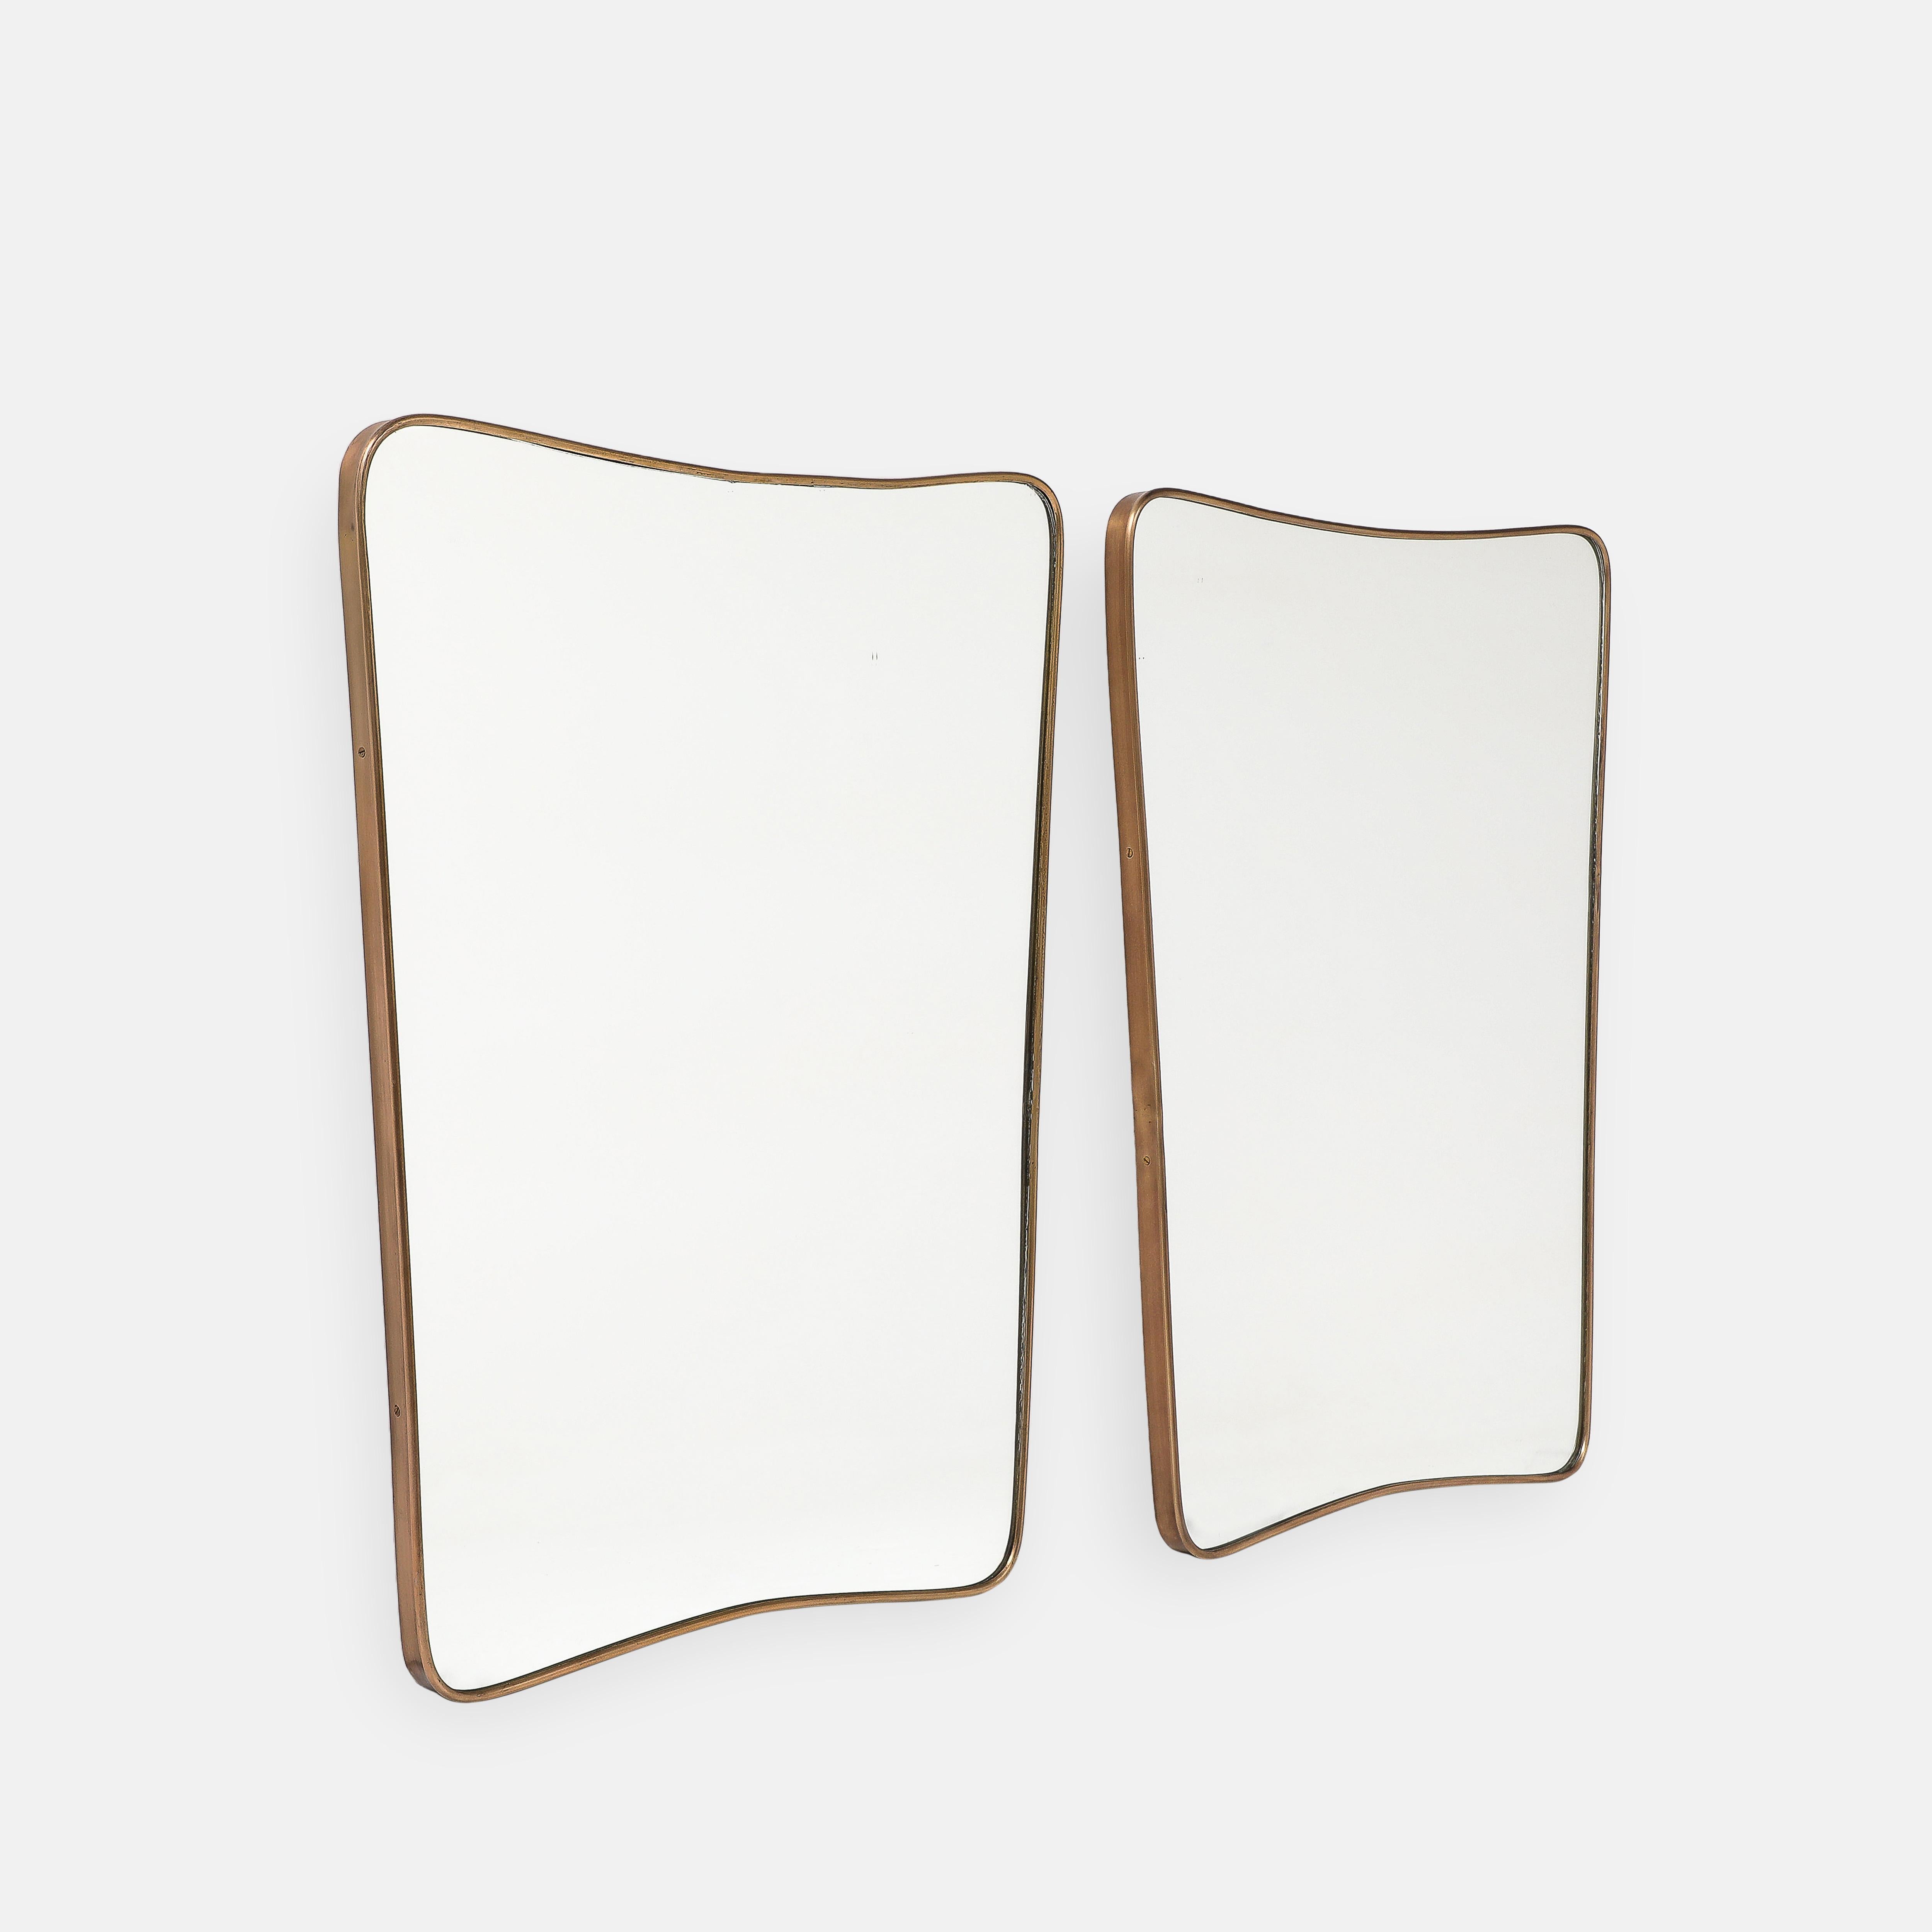 Paire de miroirs muraux modernistes italiens des années 1950, composés de cadres en laiton de forme arrondie avec des sommets légèrement arqués et des coins arrondis qui se rétrécissent vers le bas, avec des supports en bois. Les plaques d'origine